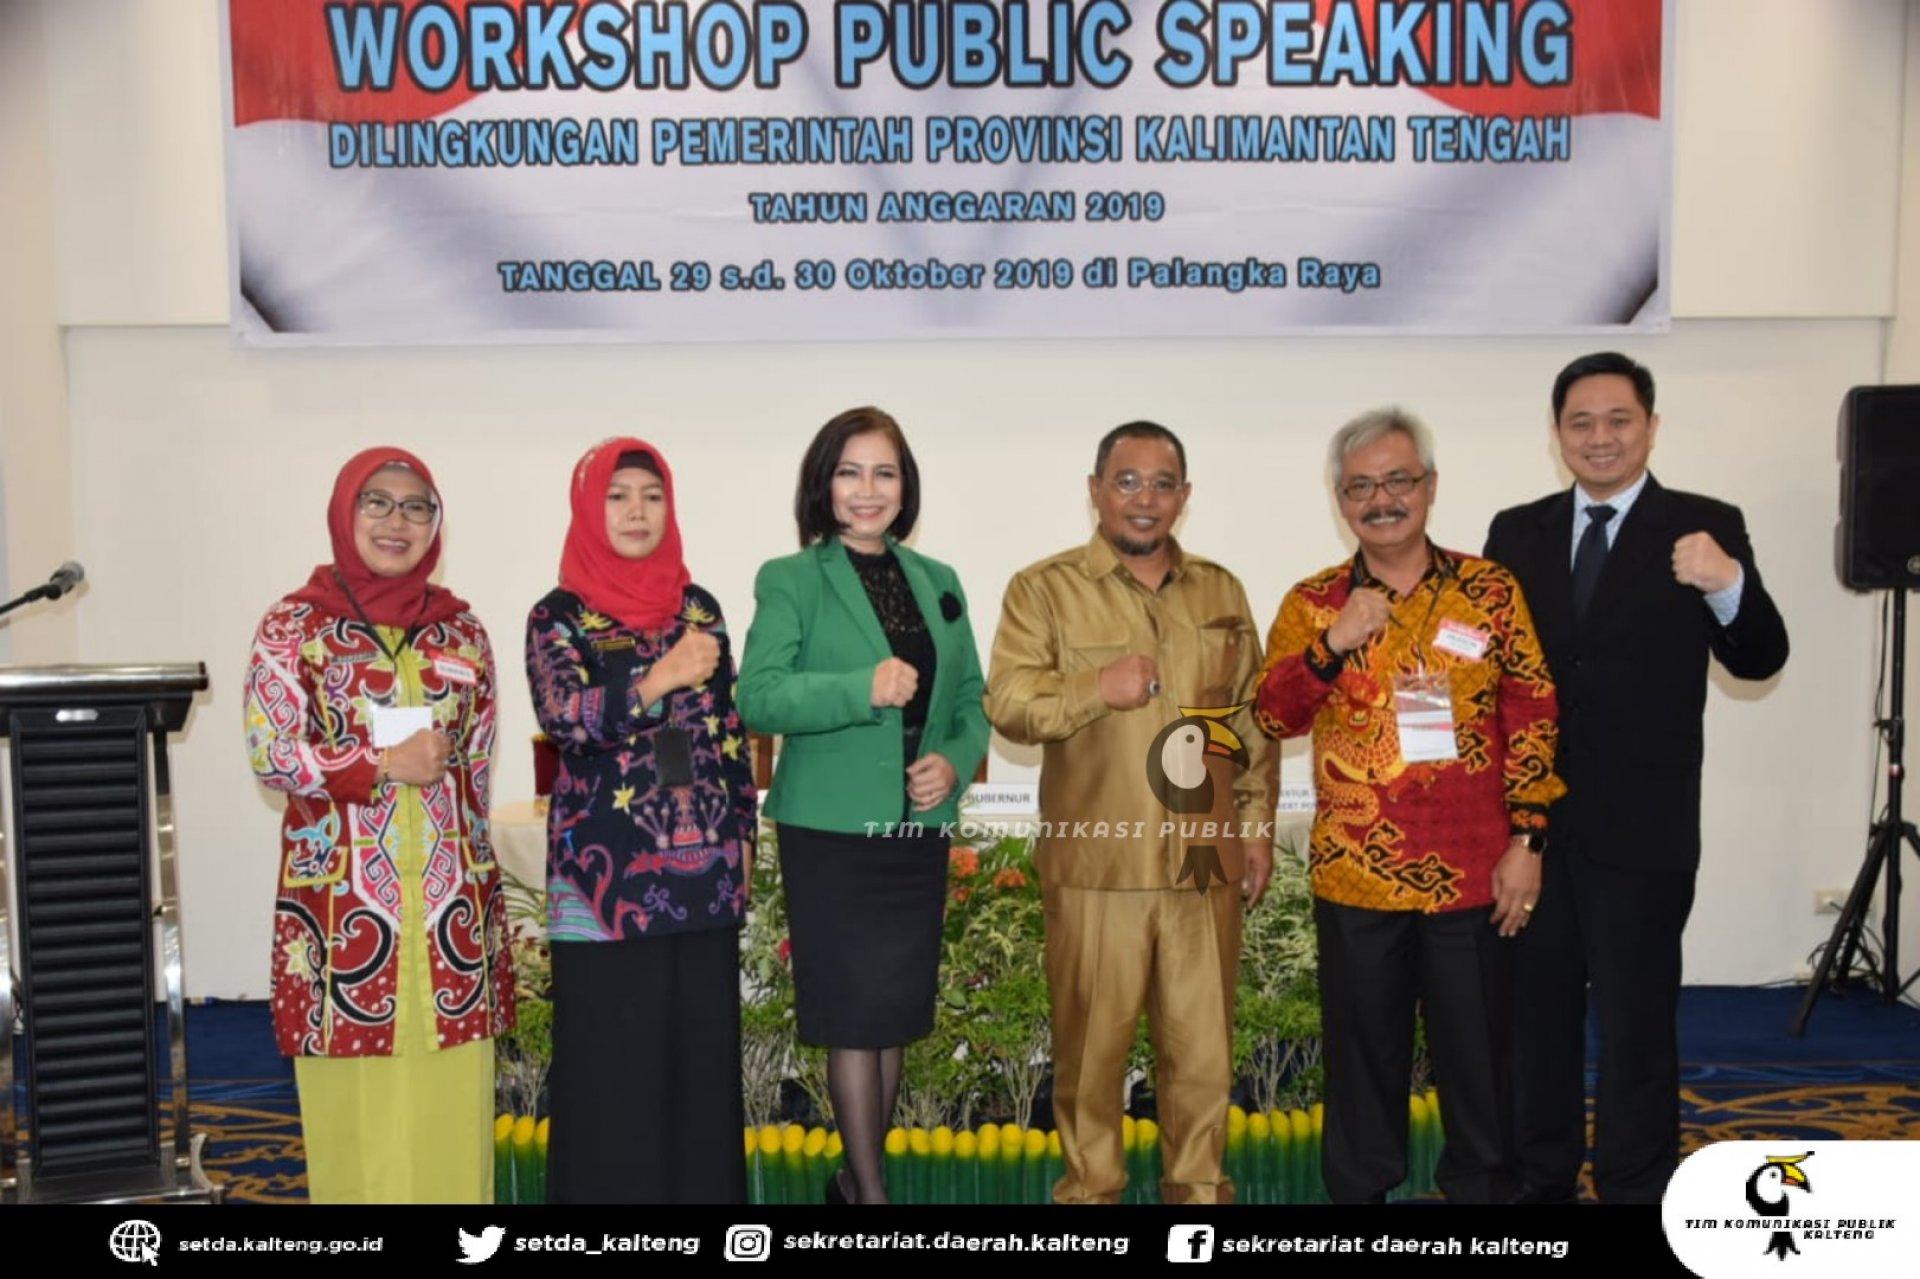 Pembukaan Workshop Public Speaking di Lingkungan Pemerintah Provinsi Kalimantan Tengah Tahun 2019